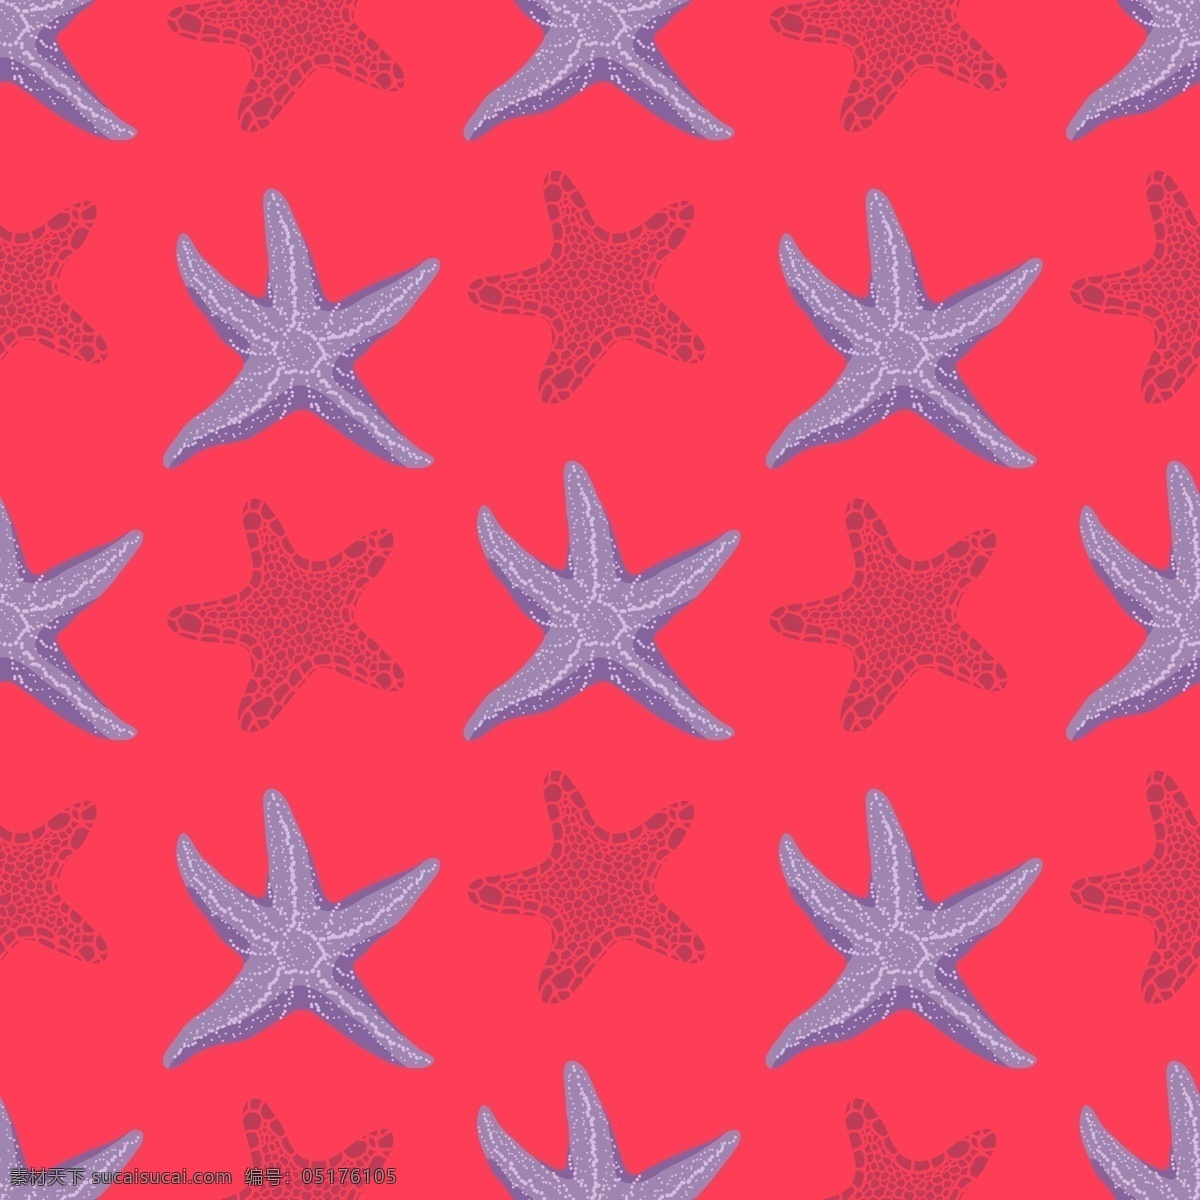 浪漫 海洋生物 壁纸 图案 海星 玫红色底 星星图案 壁纸图案